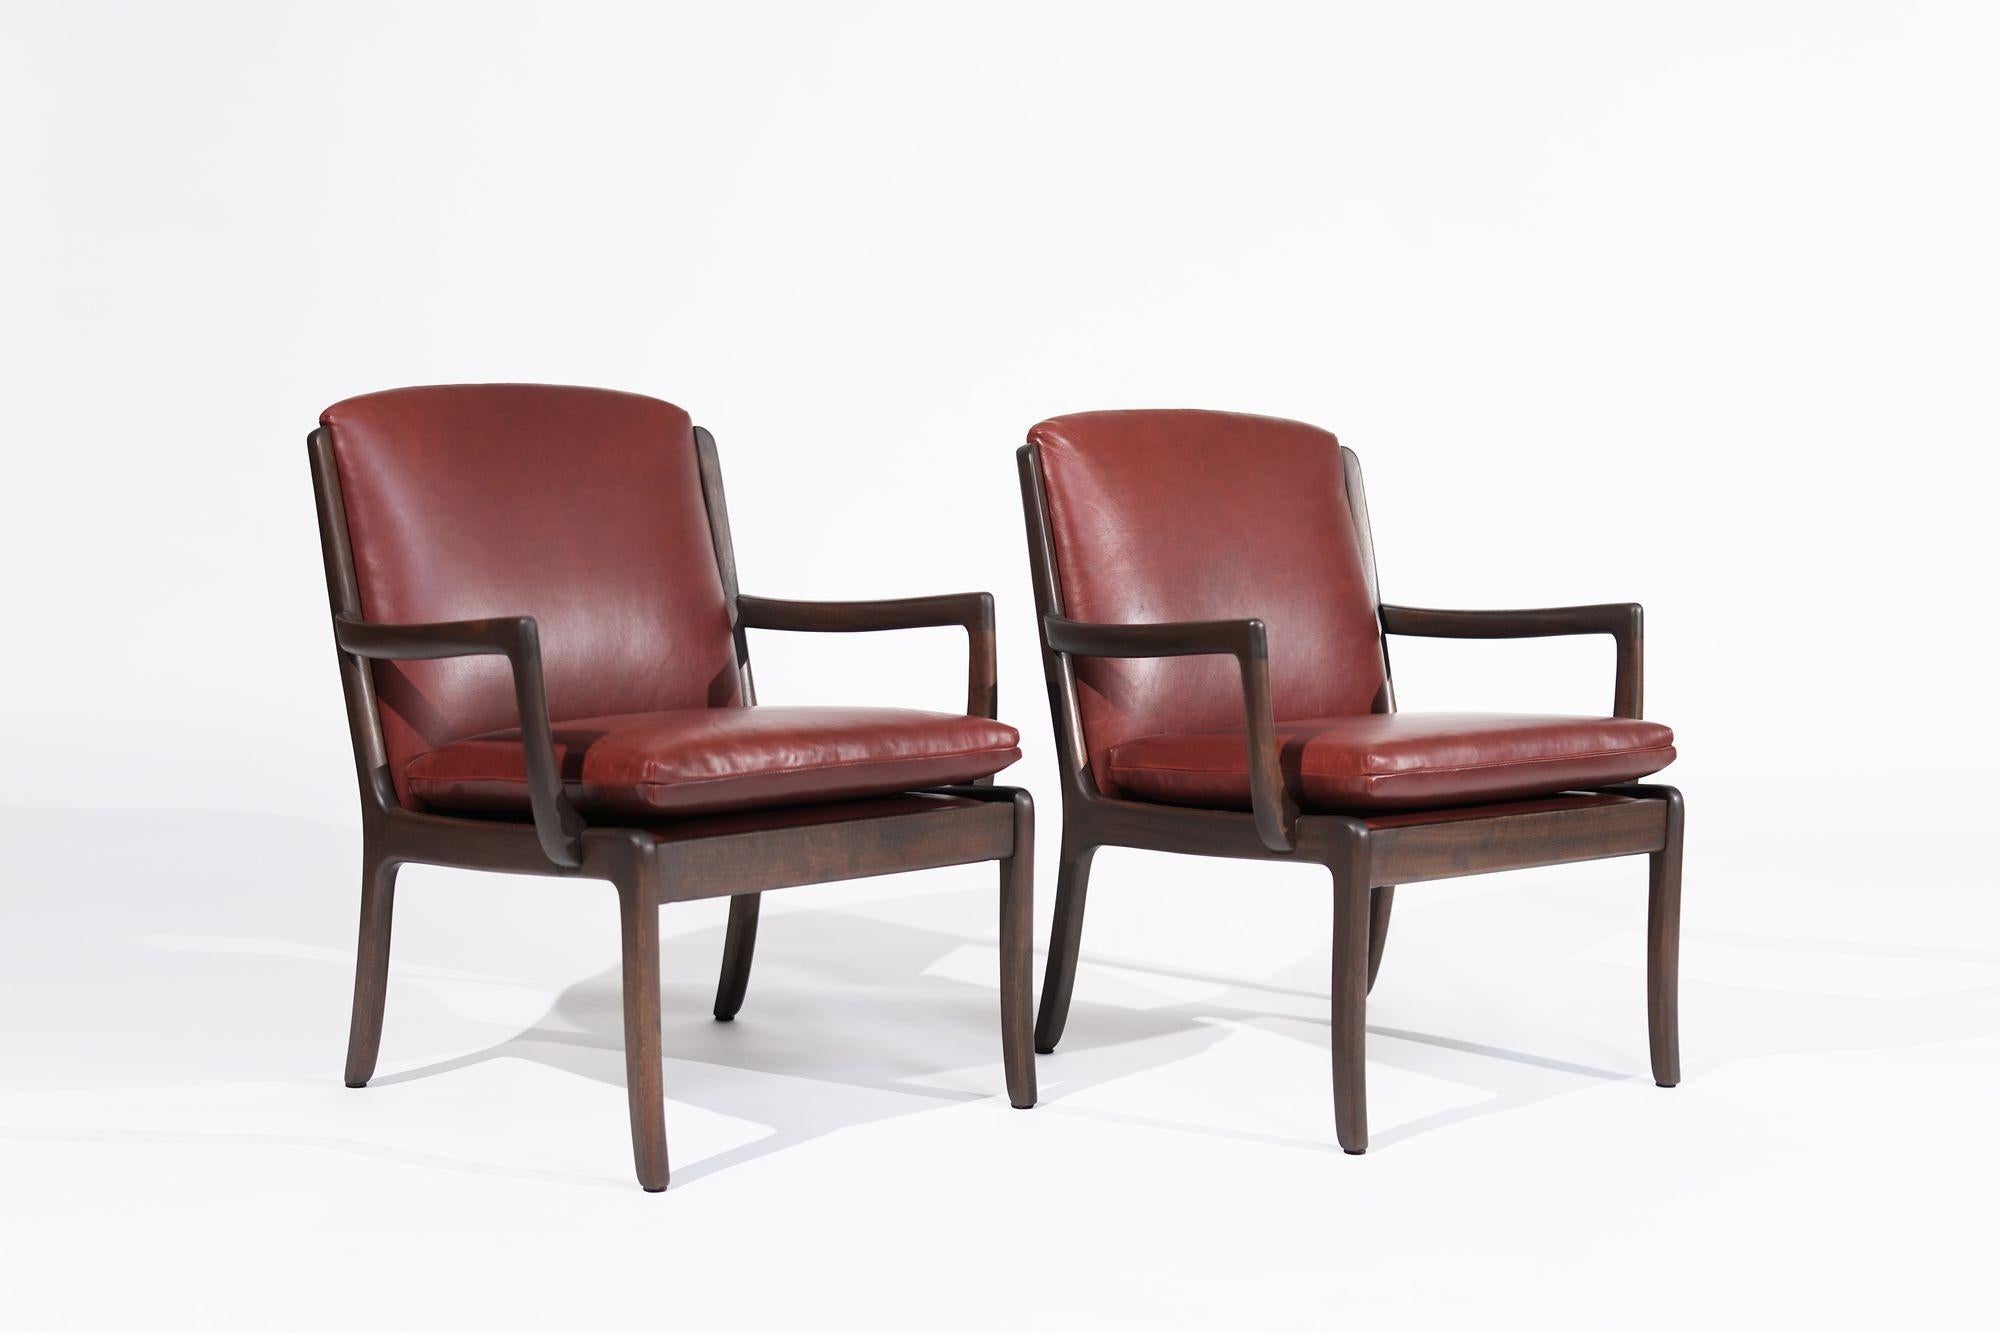 Ein exquisites Set skandinavisch-moderner Loungesessel des bekannten dänischen Designers Ole Wanscher für Cado. Diese Stühle aus edlem Mahagoniholz strahlen Raffinesse und Eleganz aus. Sorgfältig restauriert und mit luxuriösem Sangria-Leder bezogen,